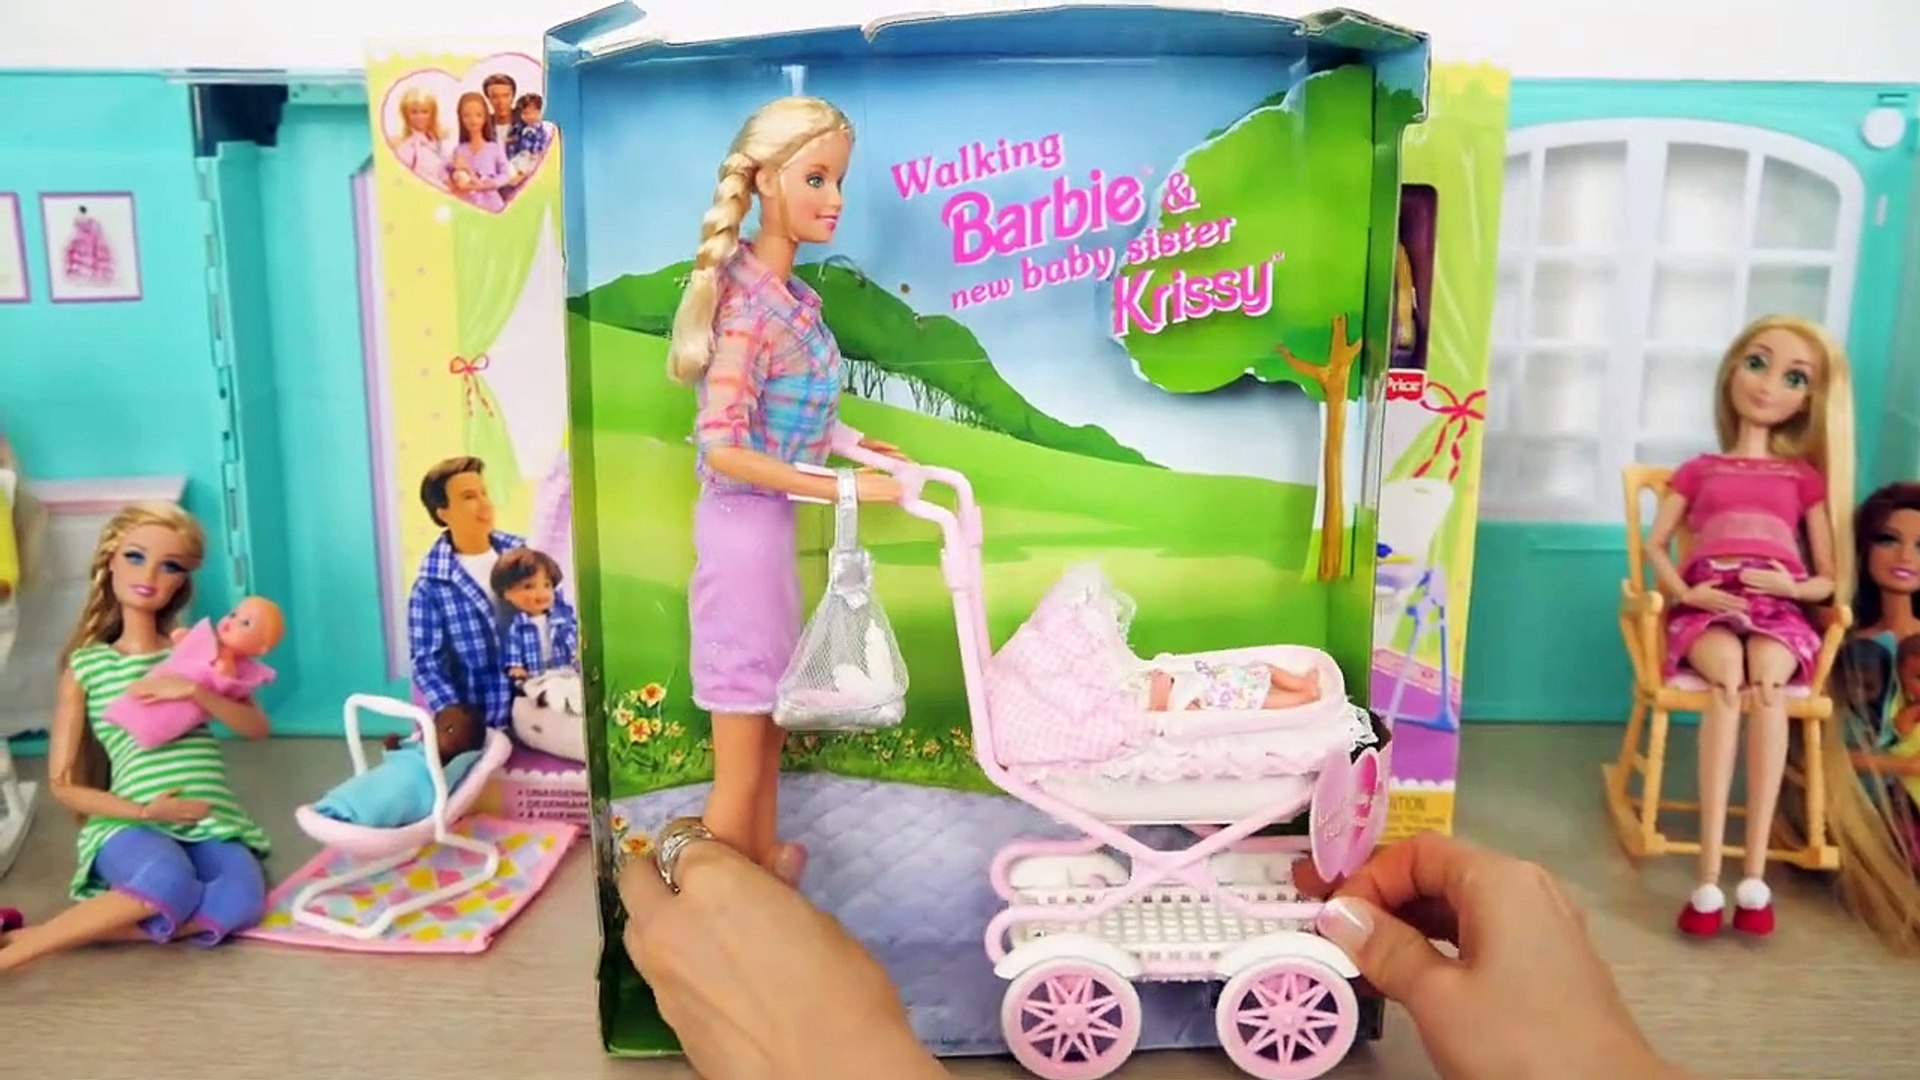 & Walking Barbie Nursery Playset Poussette de bébé Kinderwagen - Vidéo  Dailymotion